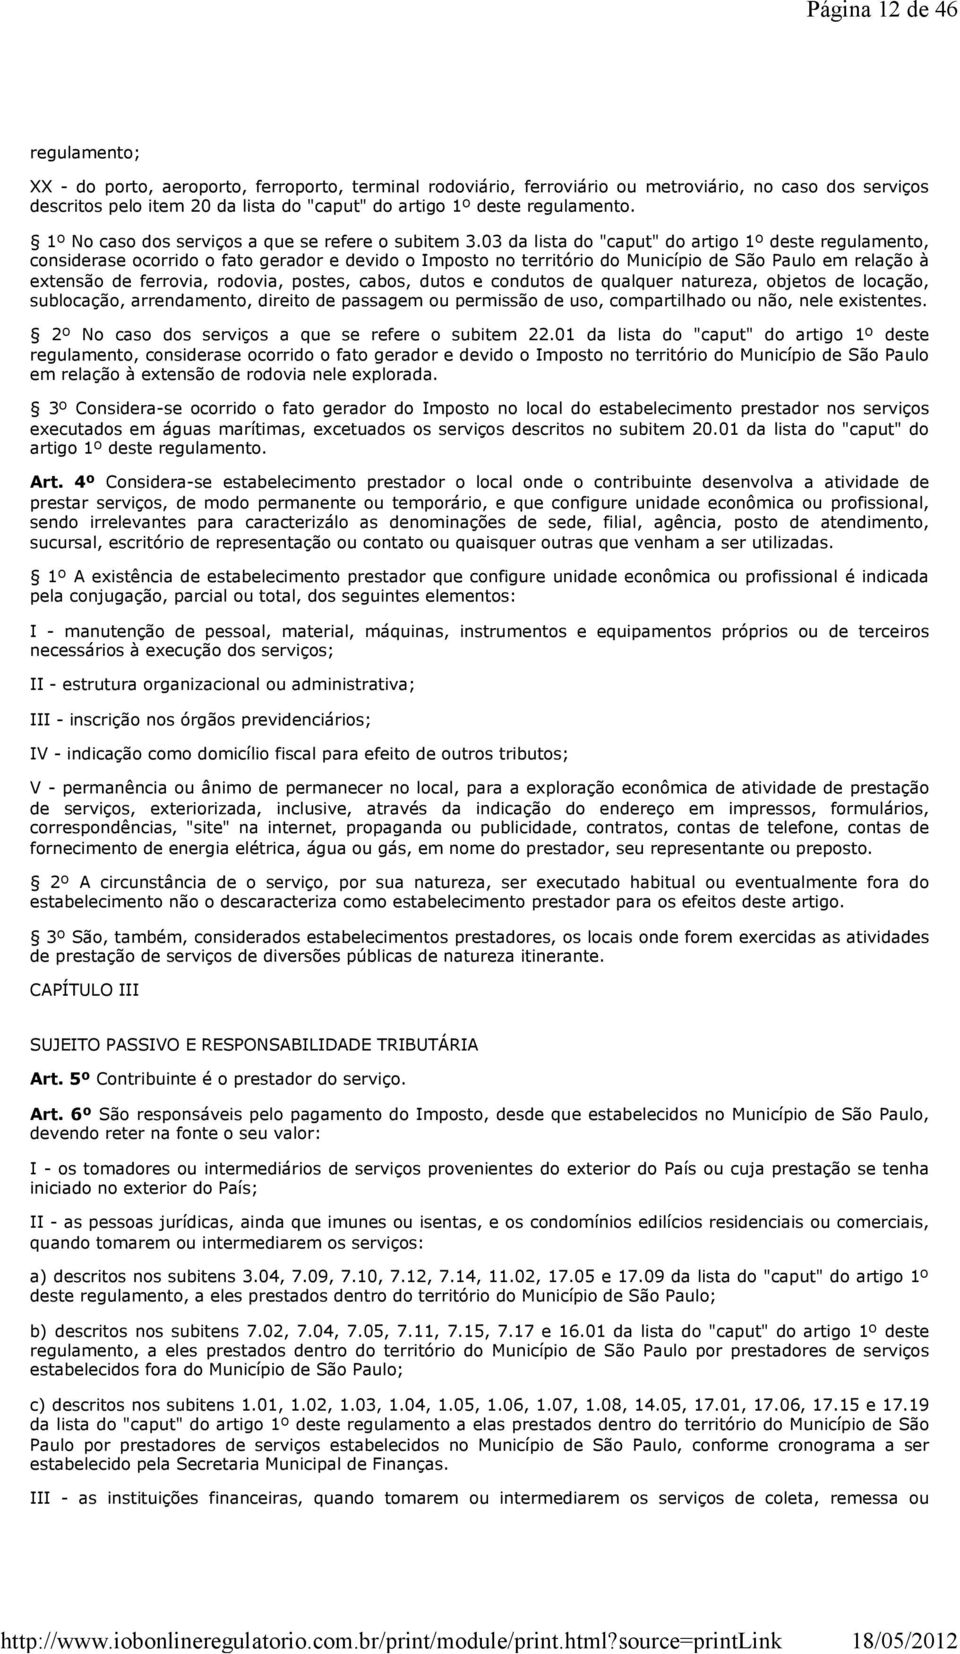 03 da lista do "caput" do artigo 1º deste regulamento, considerase ocorrido o fato gerador e devido o Imposto no território do Município de São Paulo em relação à extensão de ferrovia, rodovia,